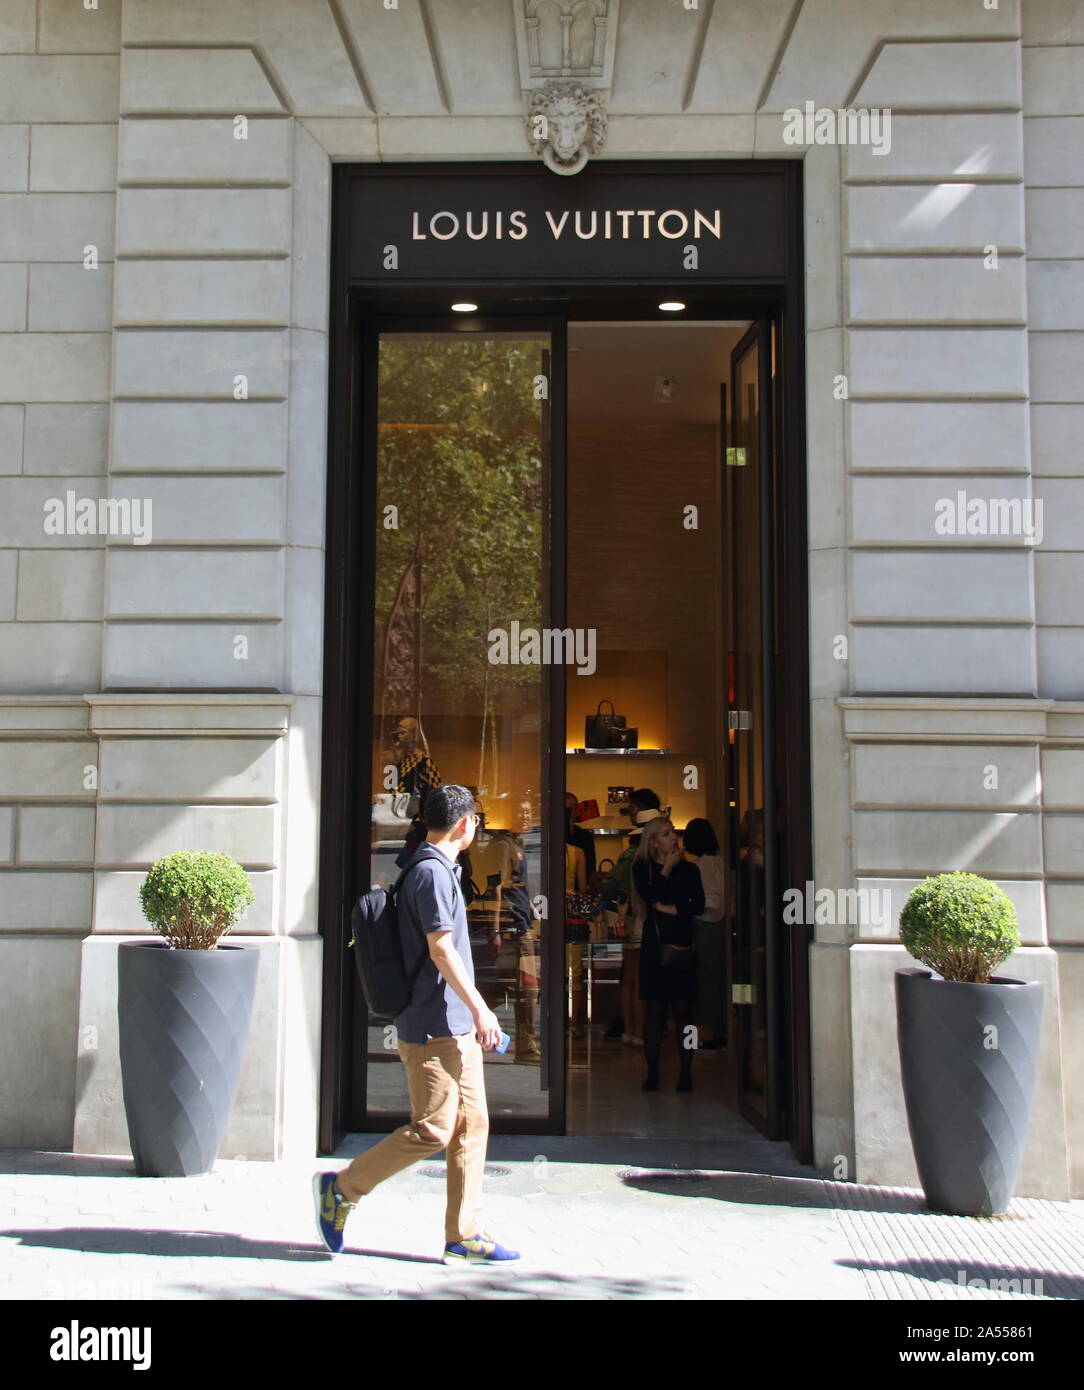 Louis Vuitton store seen in Paseo de Gracia, Barcelona Stock Photo